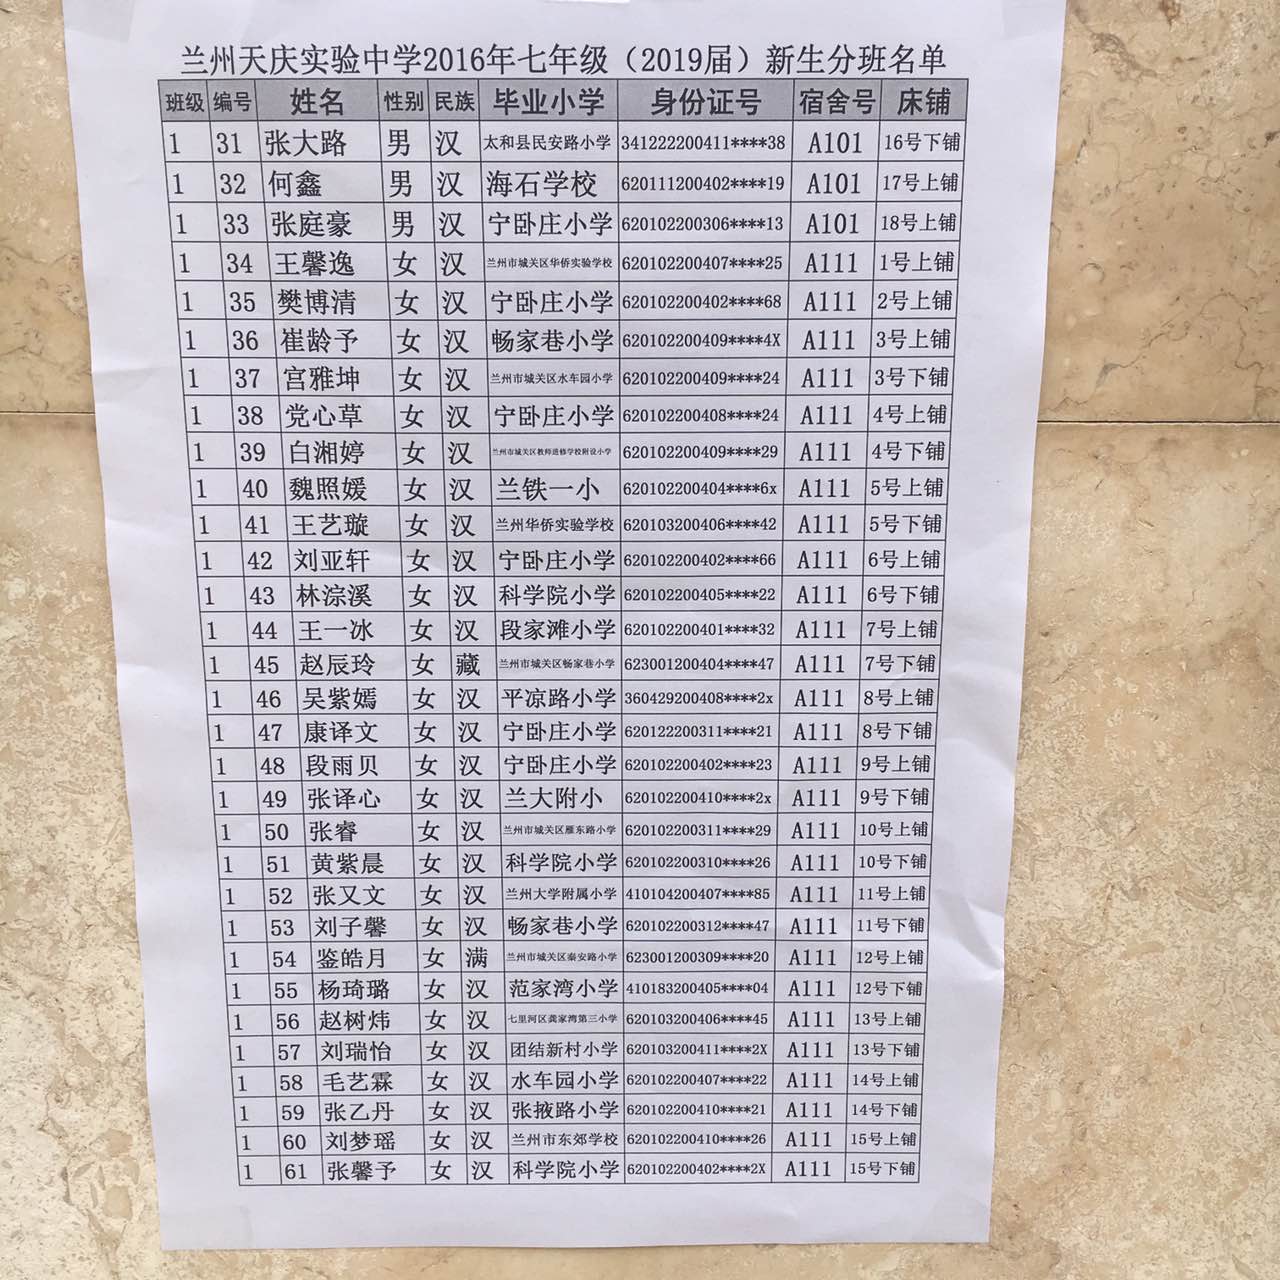 兰州天庆实验中学2016级小升初分班名单(2)